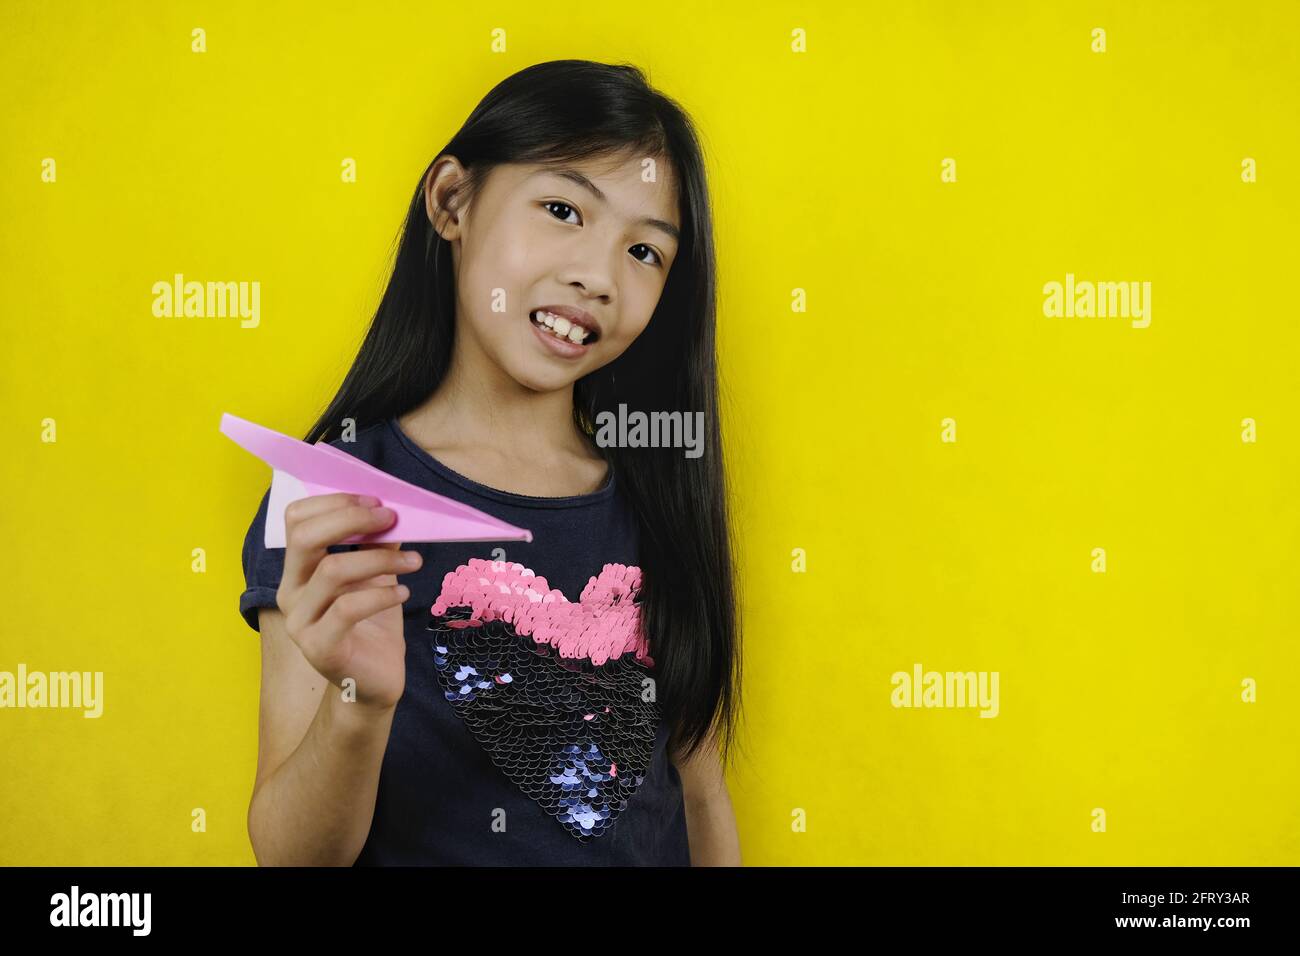 Une jeune fille asiatique mignonne joue avec son avion aérodynamique en papier rose, le tenant d'une main, visant et se prépare à lancer. Rétrogro jaune vif Banque D'Images